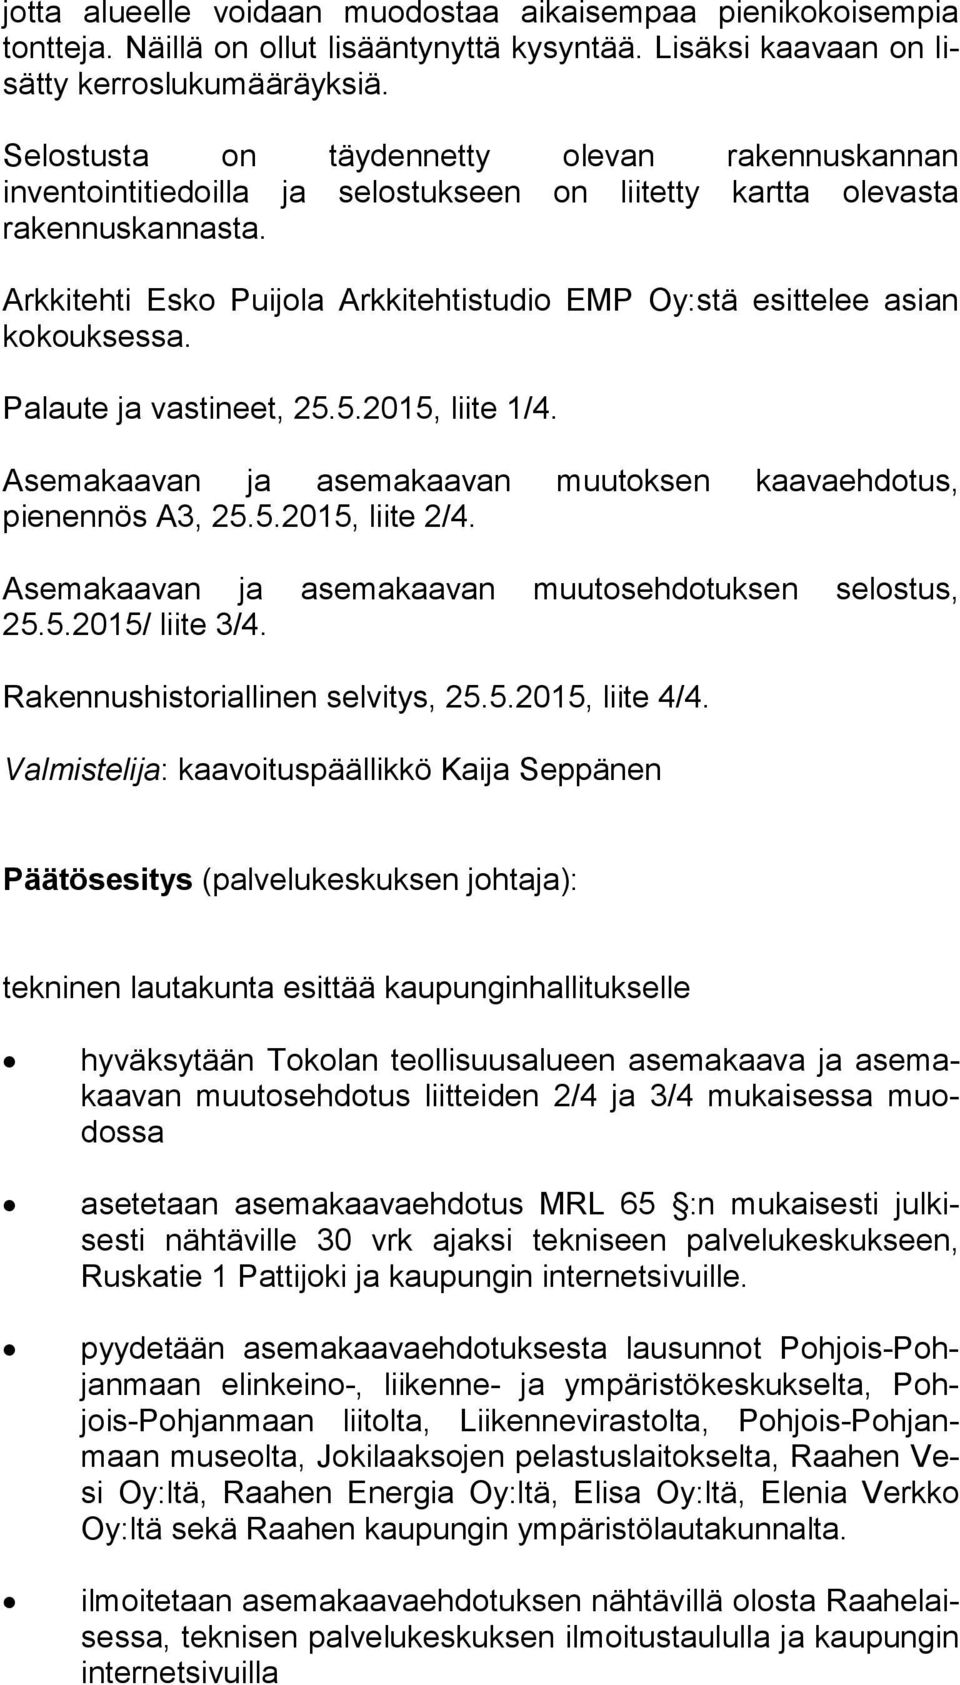 Arkkitehti Esko Puijola Arkkitehtistudio EMP Oy:stä esittelee asian ko kouk ses sa. Palaute ja vastineet, 25.5.2015, liite 1/4. Asemakaavan ja asemakaavan muutoksen kaavaehdotus, pienennös A3, 25.5.2015, liite 2/4.